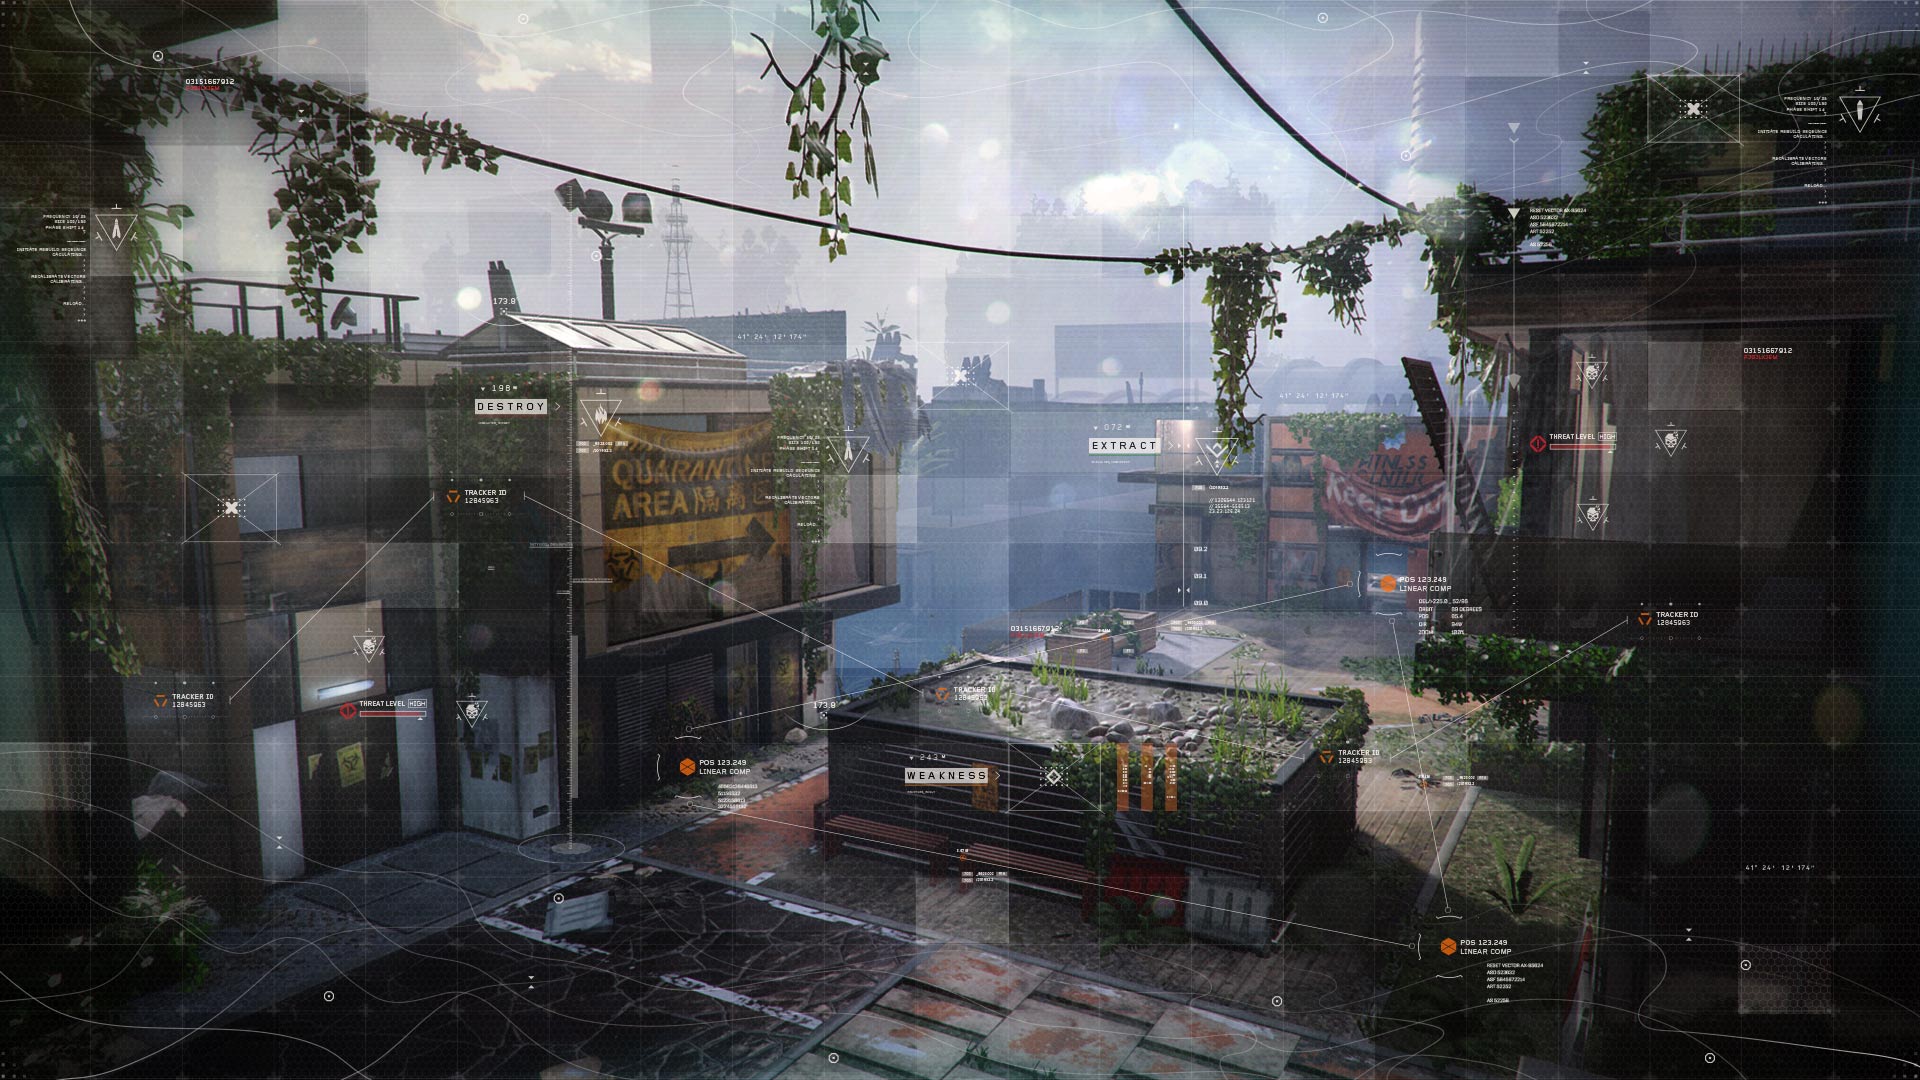 Baixe gratuitamente a imagem Videogame, Call Of Duty, Call Of Duty: Black Ops Iii na área de trabalho do seu PC